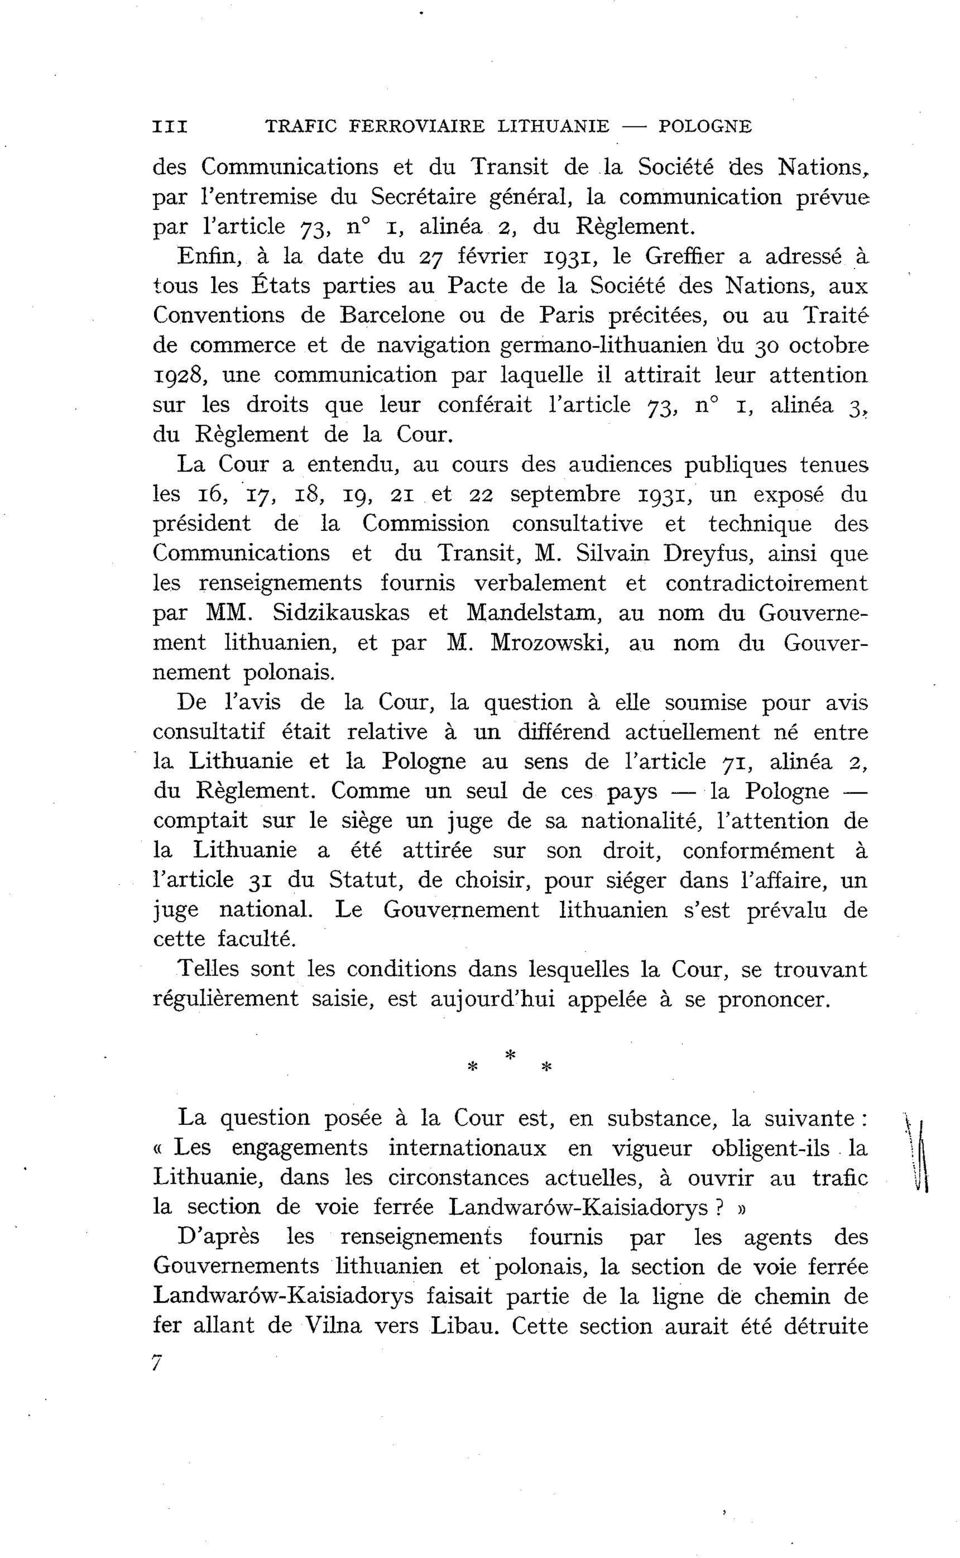 Enfin, à la date du 27 février 1931, le Greffier a adressé à tous les États parties au Pacte de la Société des Nations, aux Conventions de Barcelone ou de Paris précitées, ou au Traité de commerce et